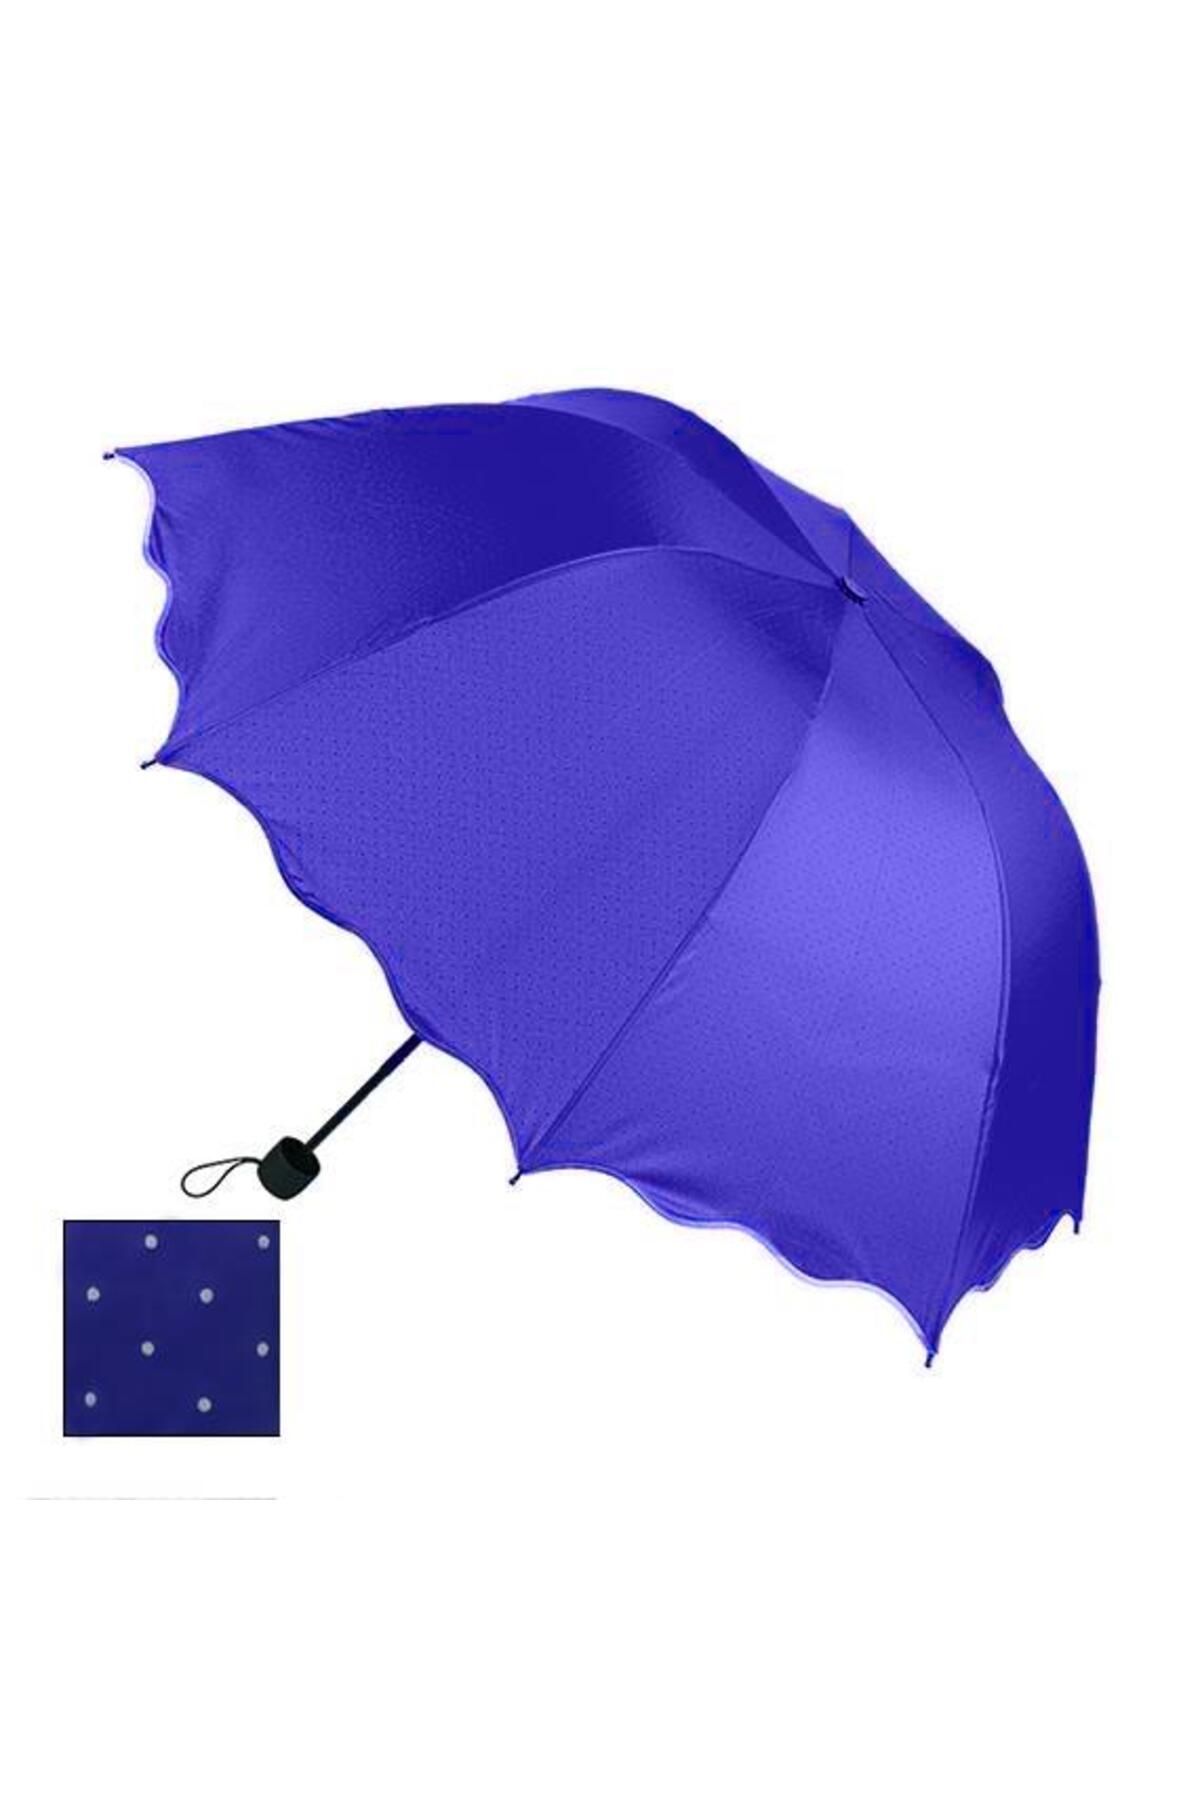 Rubenis Rb-065l Açık Mavi Şemsiyesi